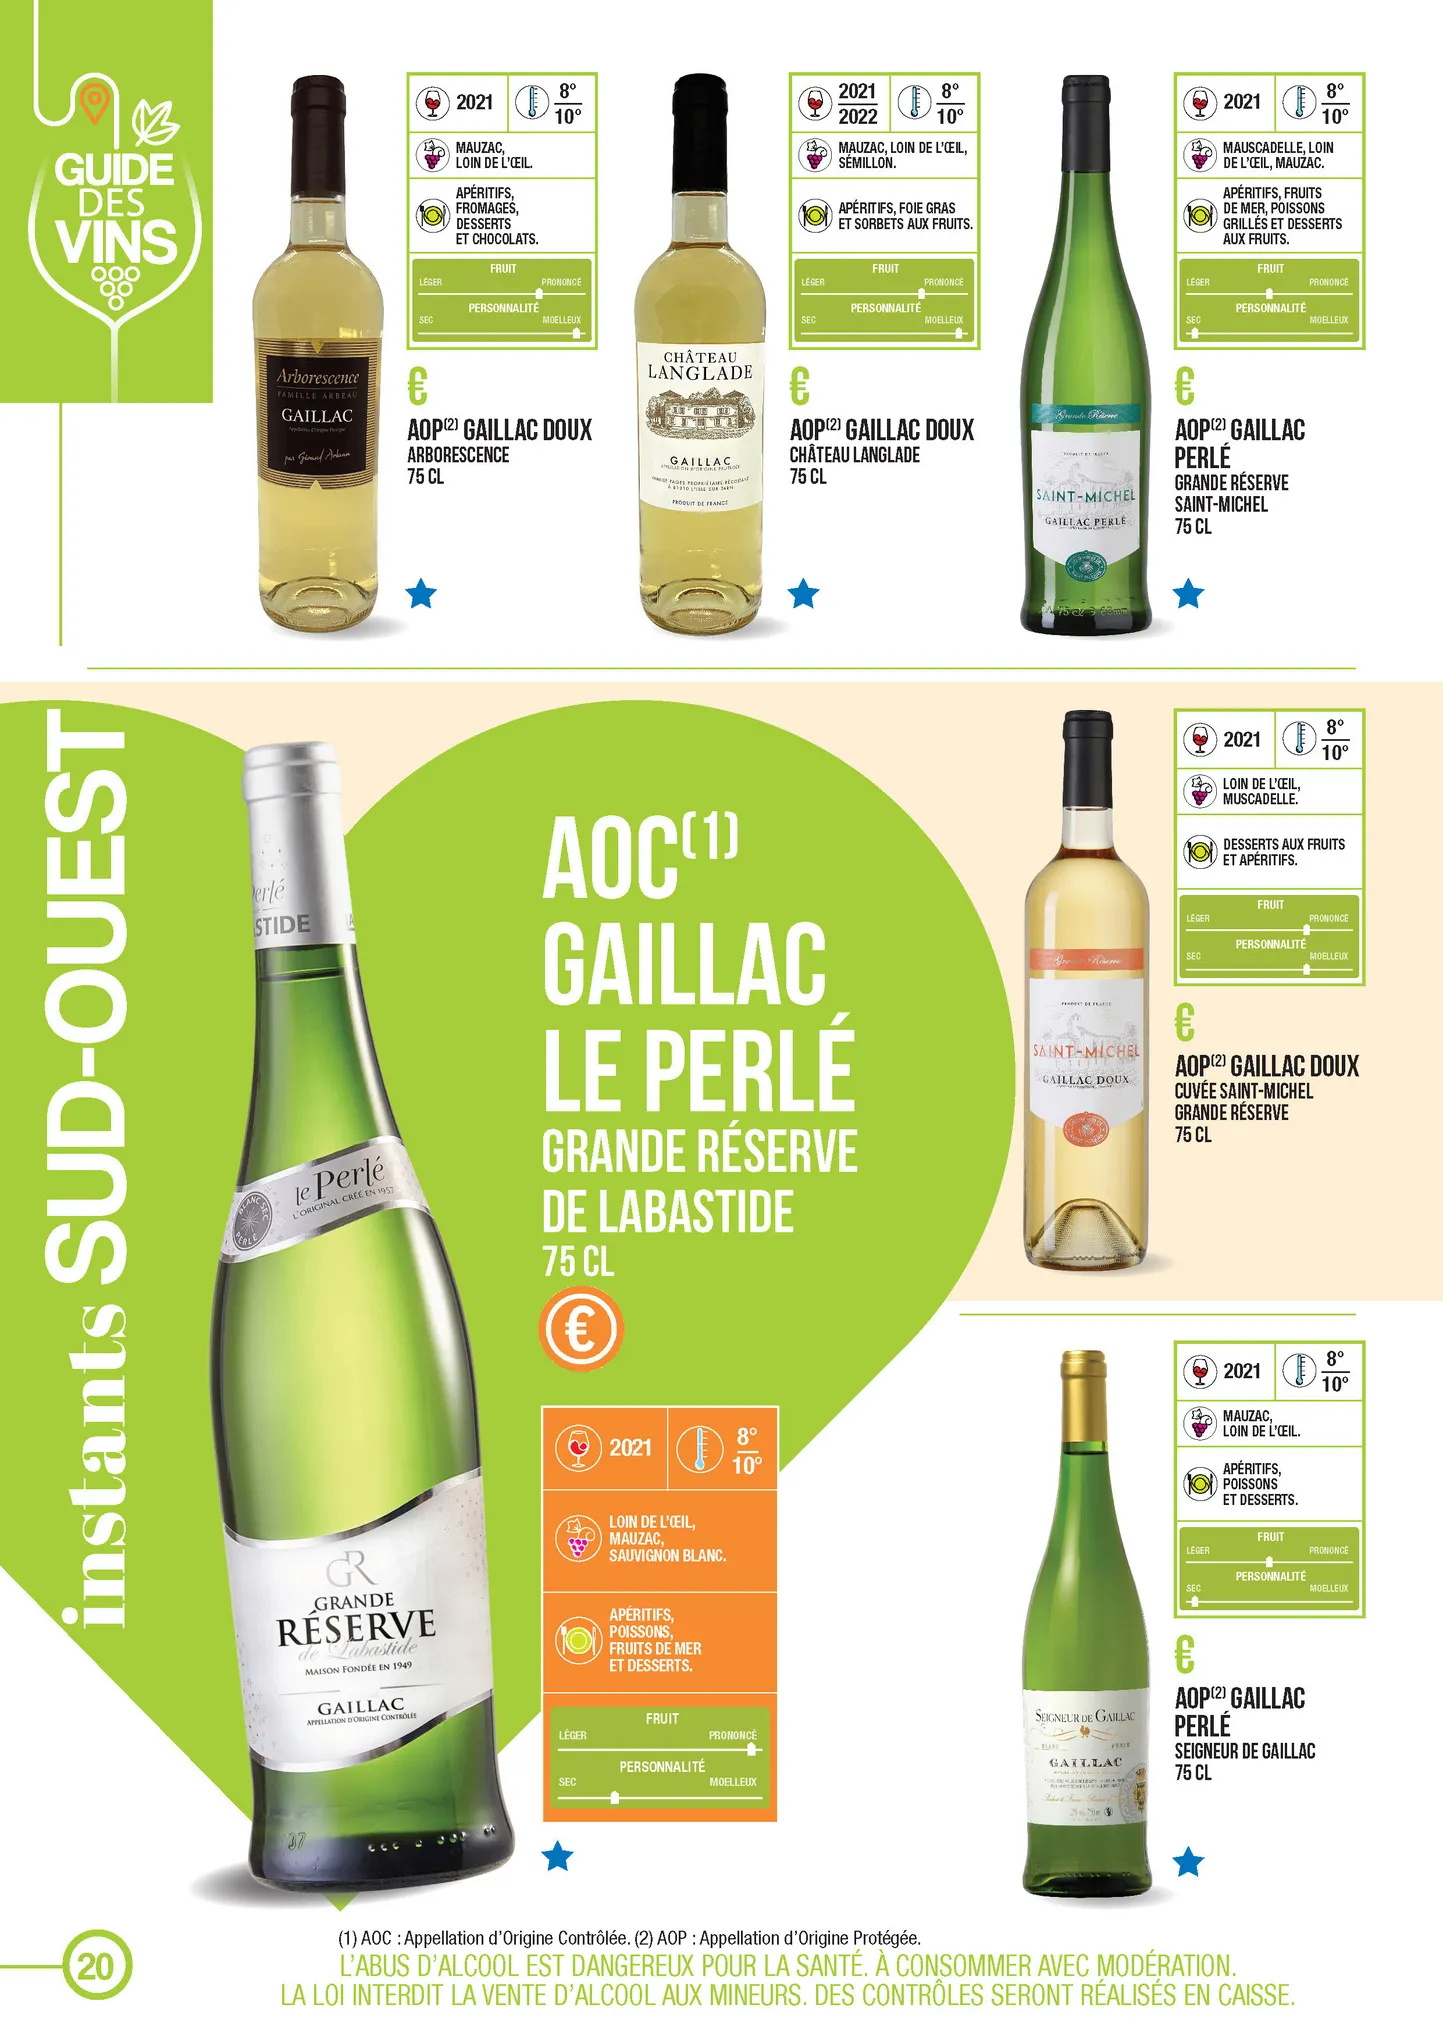 Catalogue Guide des vins, page 00020